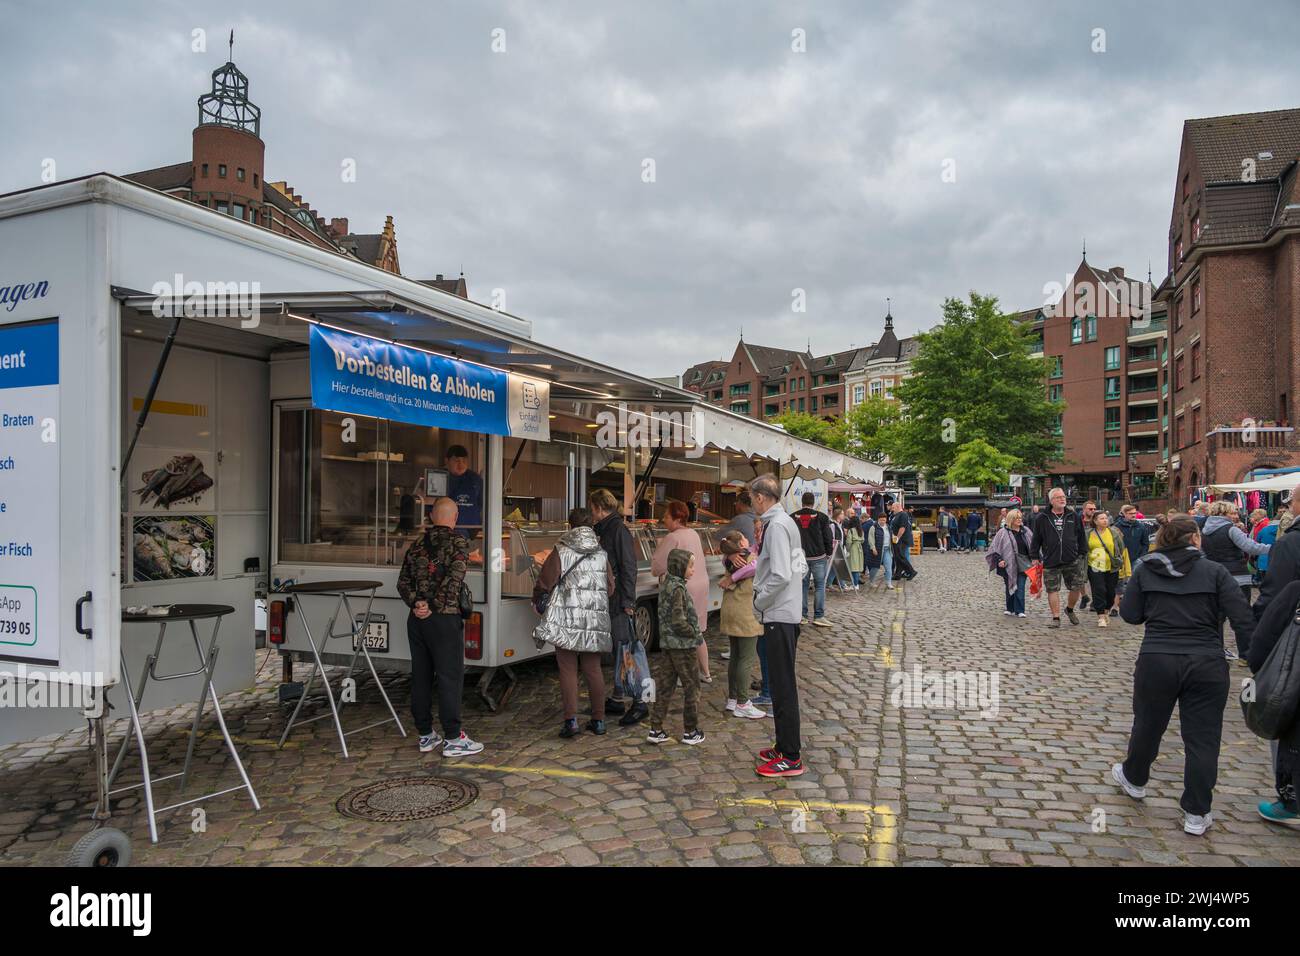 Hambourg, Allemagne - 17 juillet 2022 : foule de touristes marchant et faisant du shopping au célèbre marché aux poissons de Hambourg (Fischmarkt) Banque D'Images